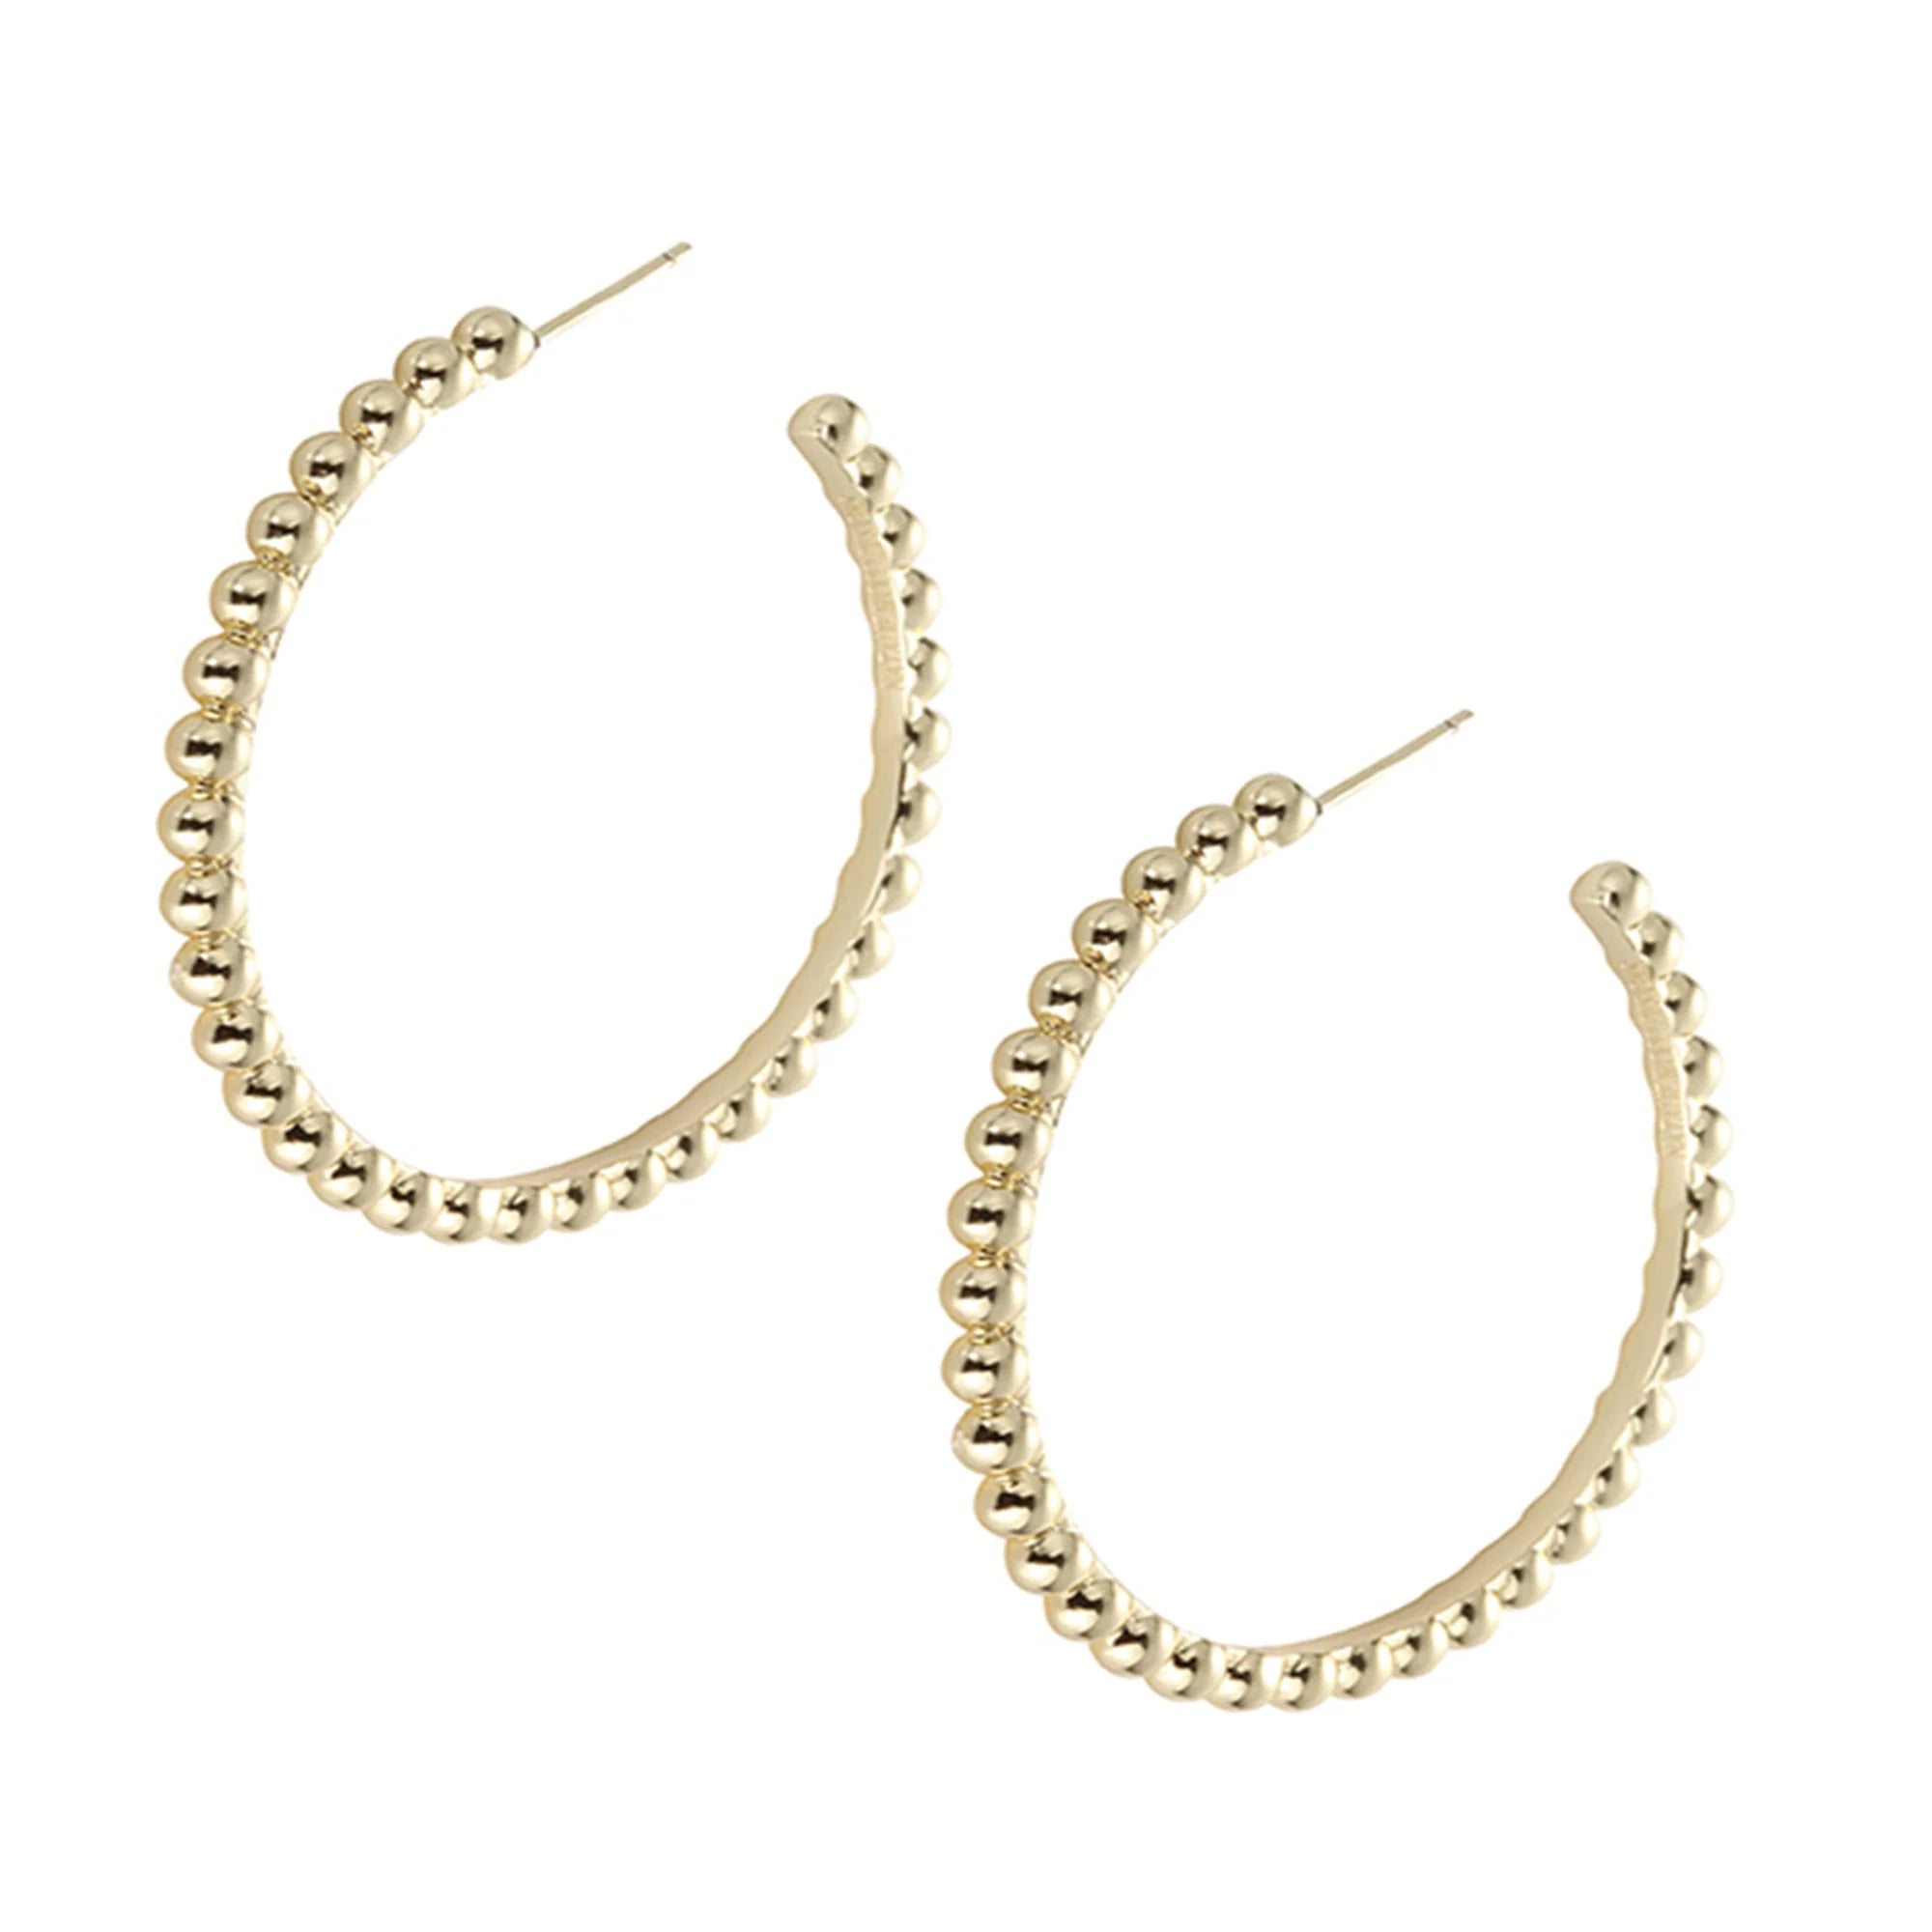 Natalie Wood - Beaded Hoop Earrings-110 Jewelry & Hair-Natalie Wood-July & June Women's Fashion Boutique Located in San Antonio, Texas